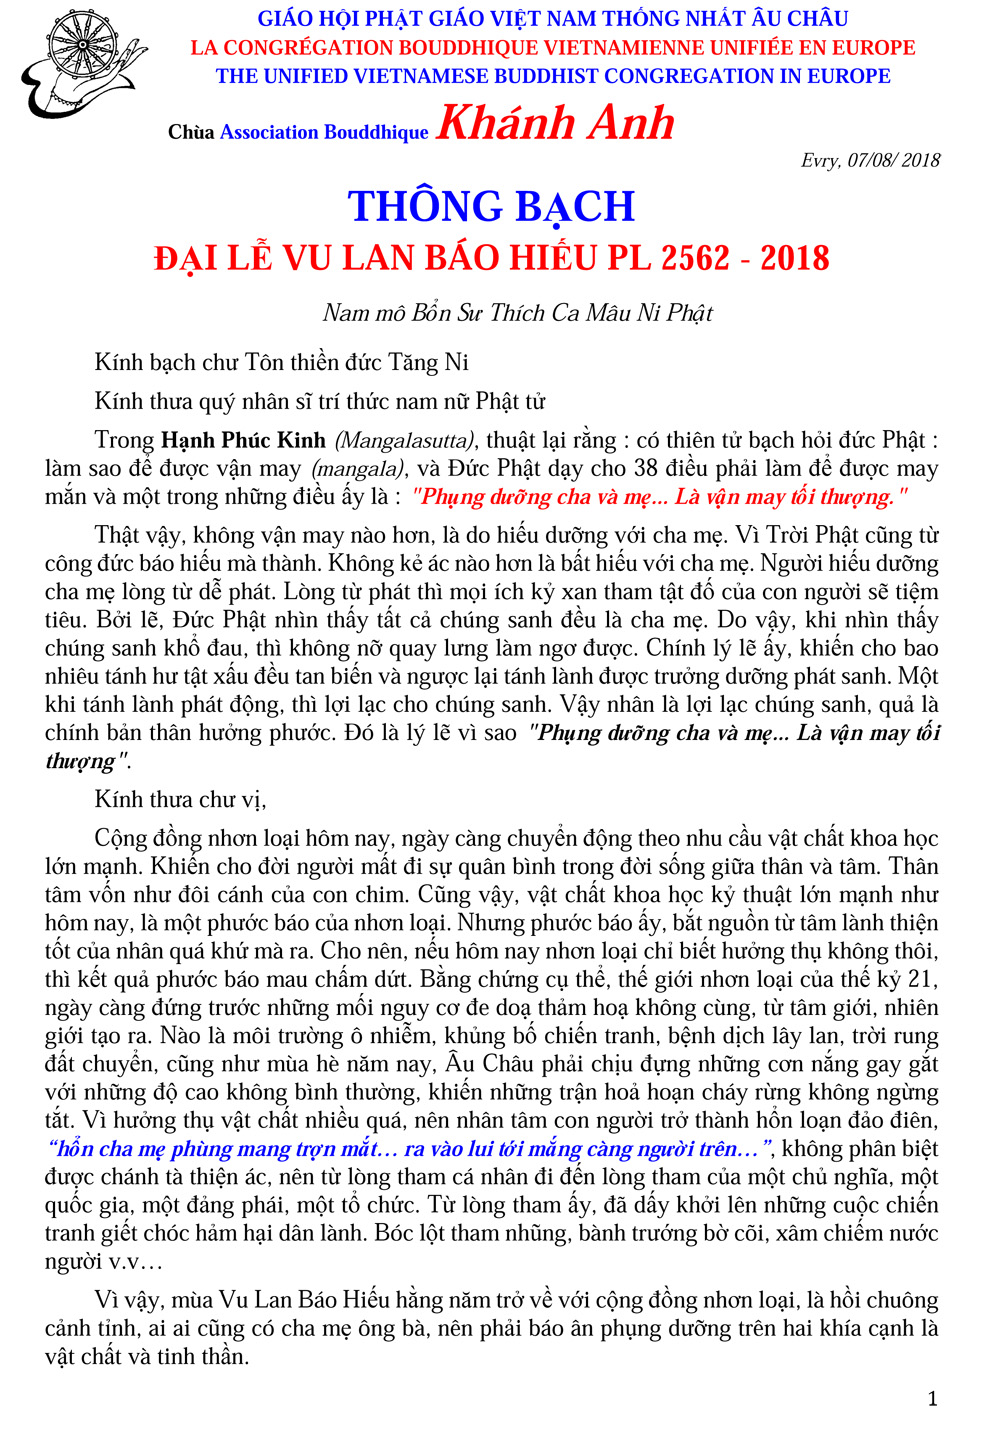 Thong Bach Vu Lan 2562-2018_GH Au Chau-1